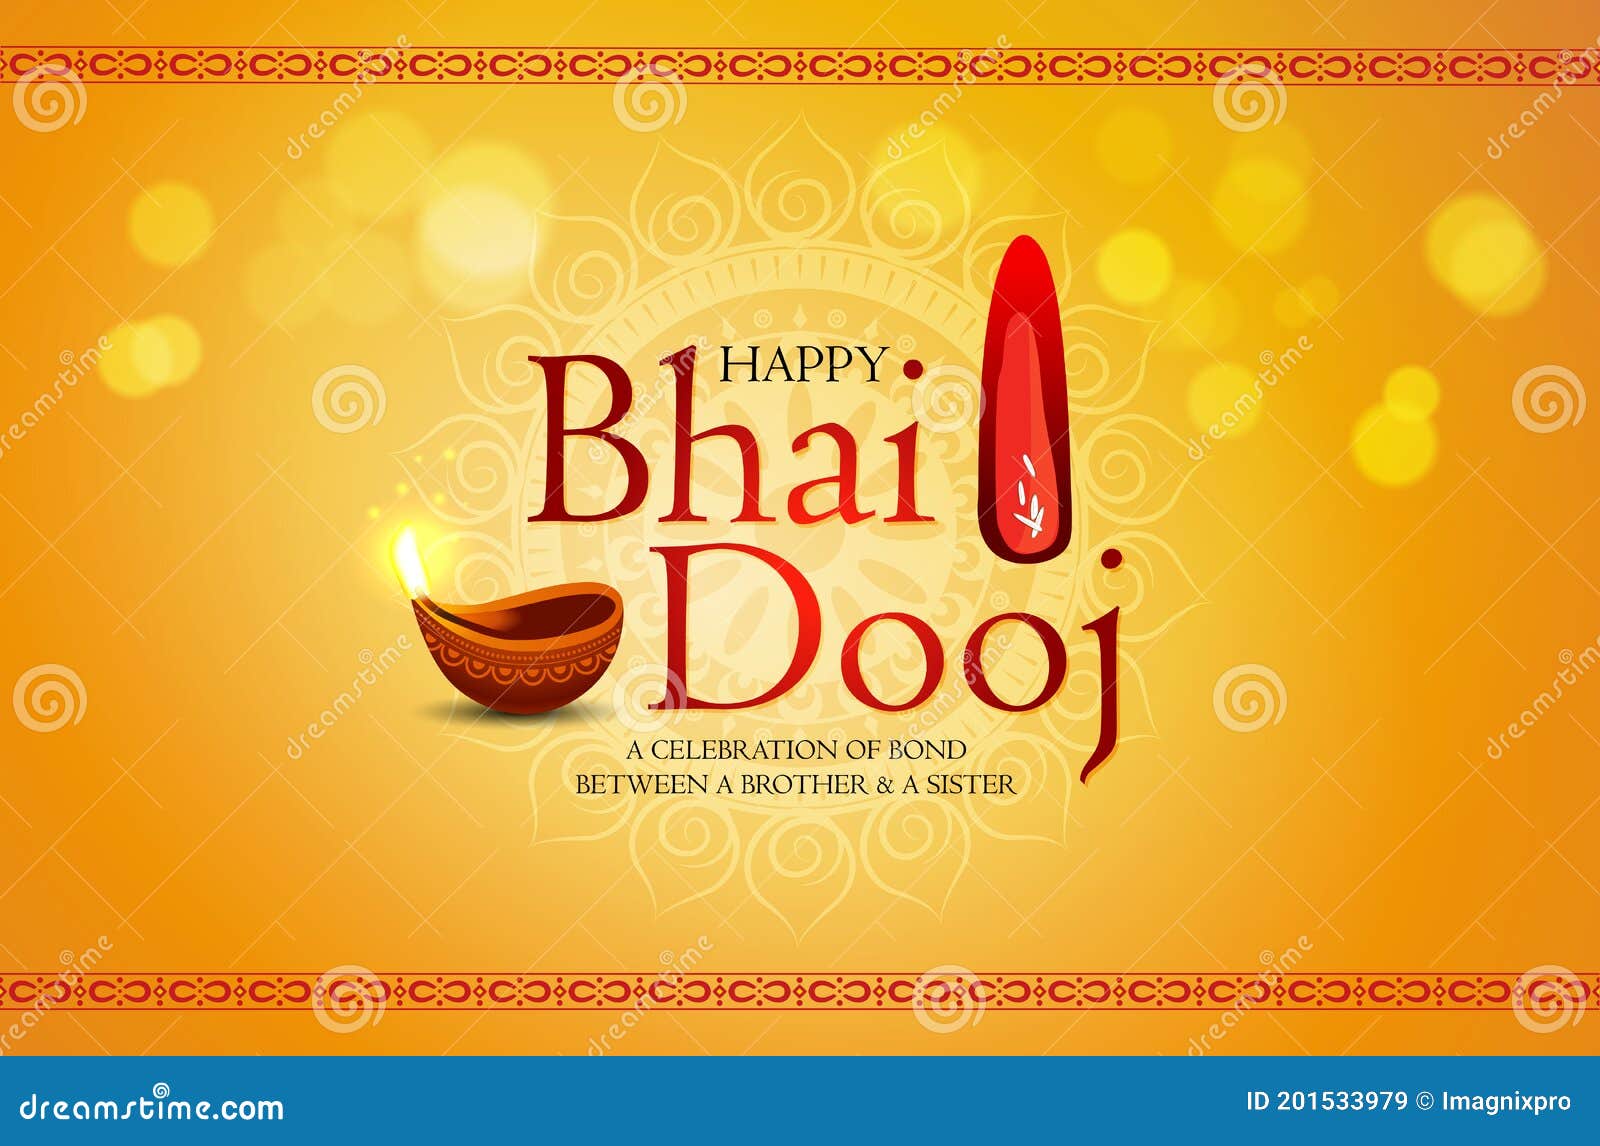 Happy Bhai Dooj, Bhai Tika, Bhau-Beej, Indian Traditional Family ...